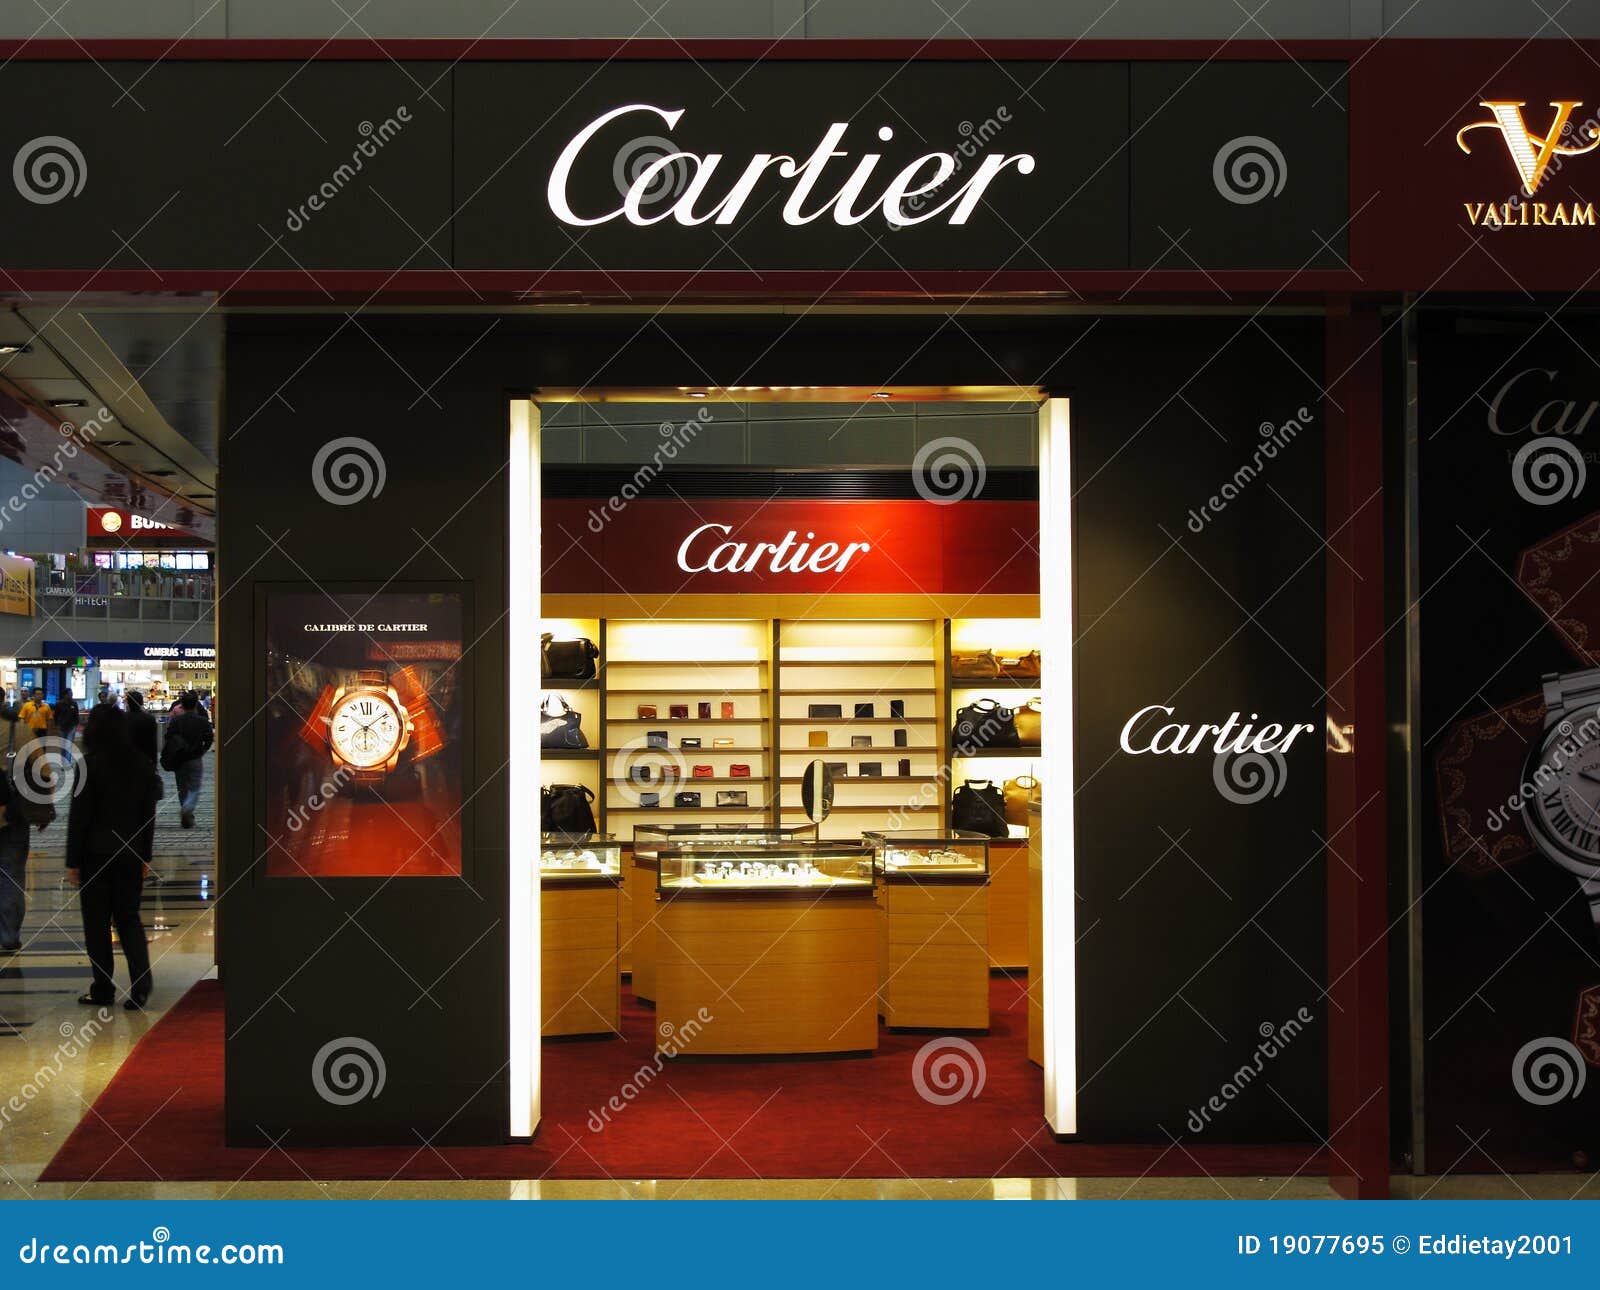 cartier as a brand